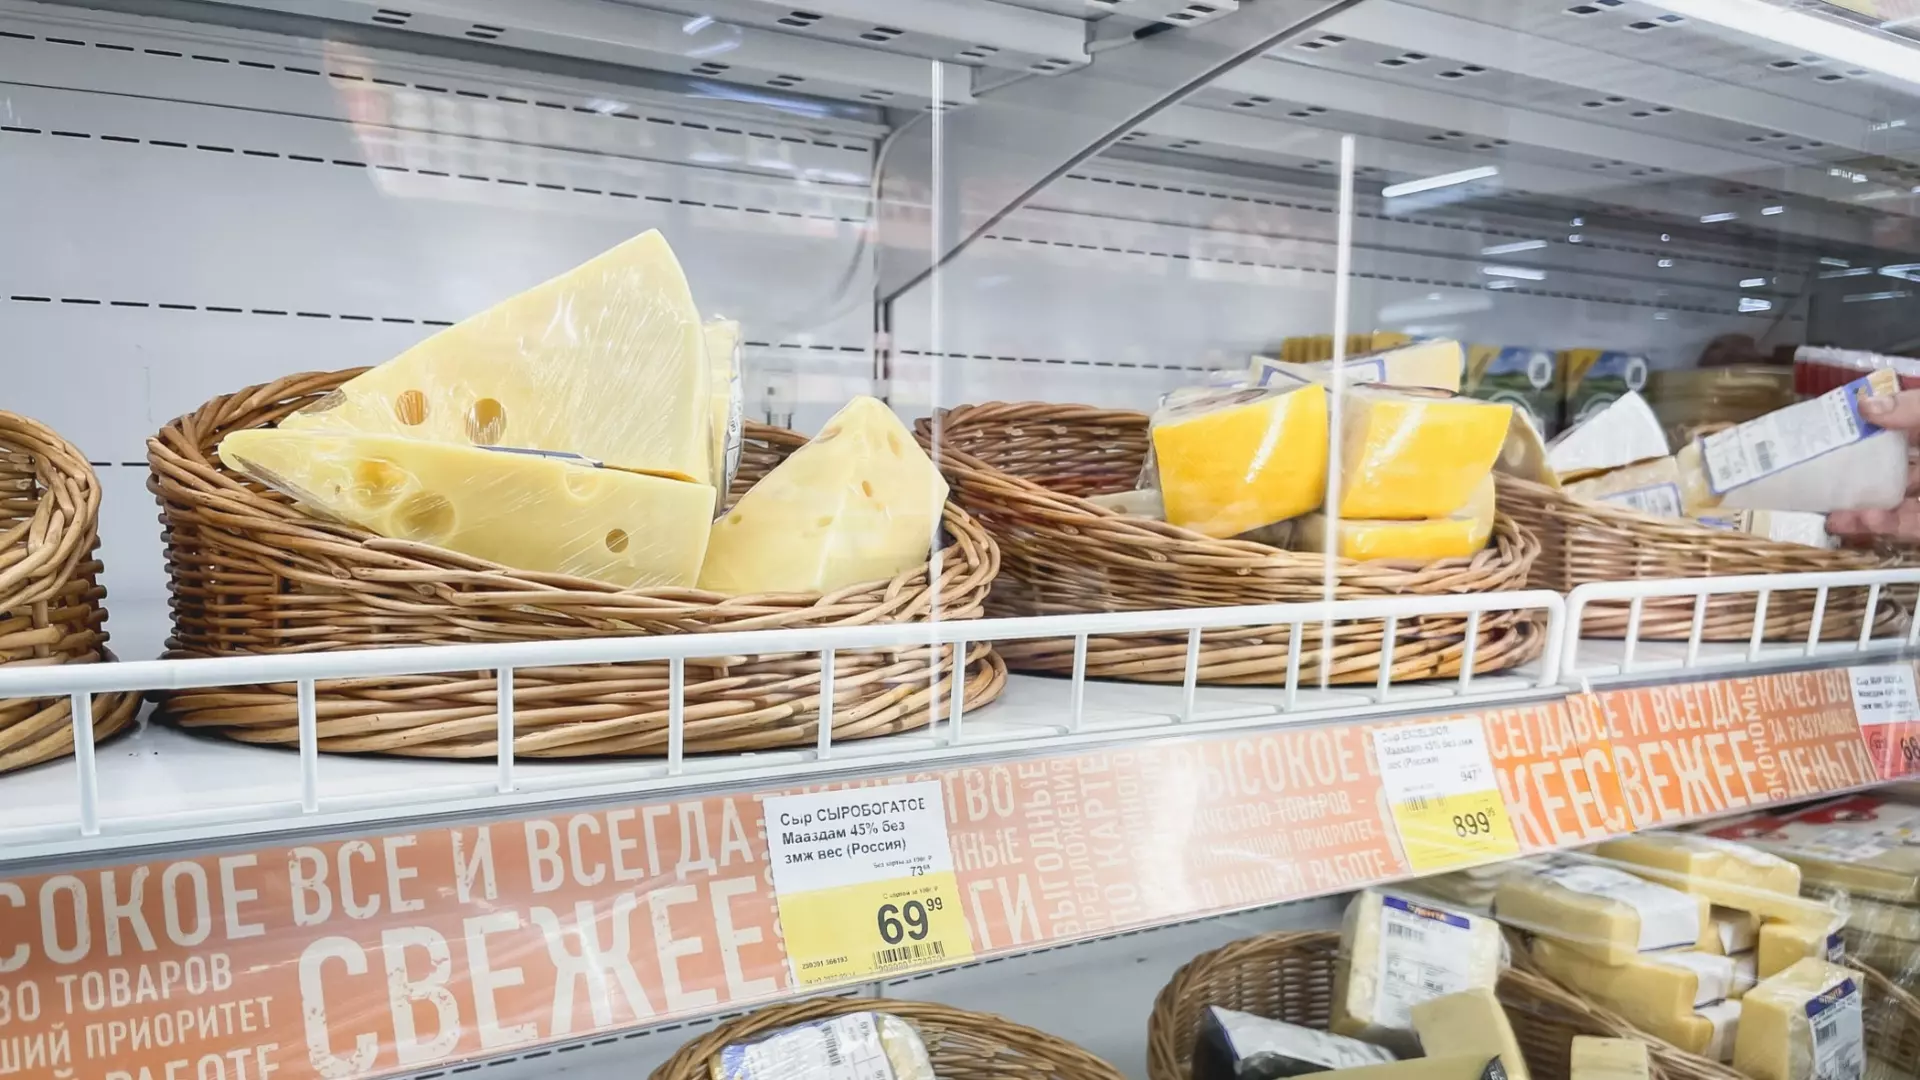 Волгоградский гурман-клептоман отработает 100 часов за кражу сыра